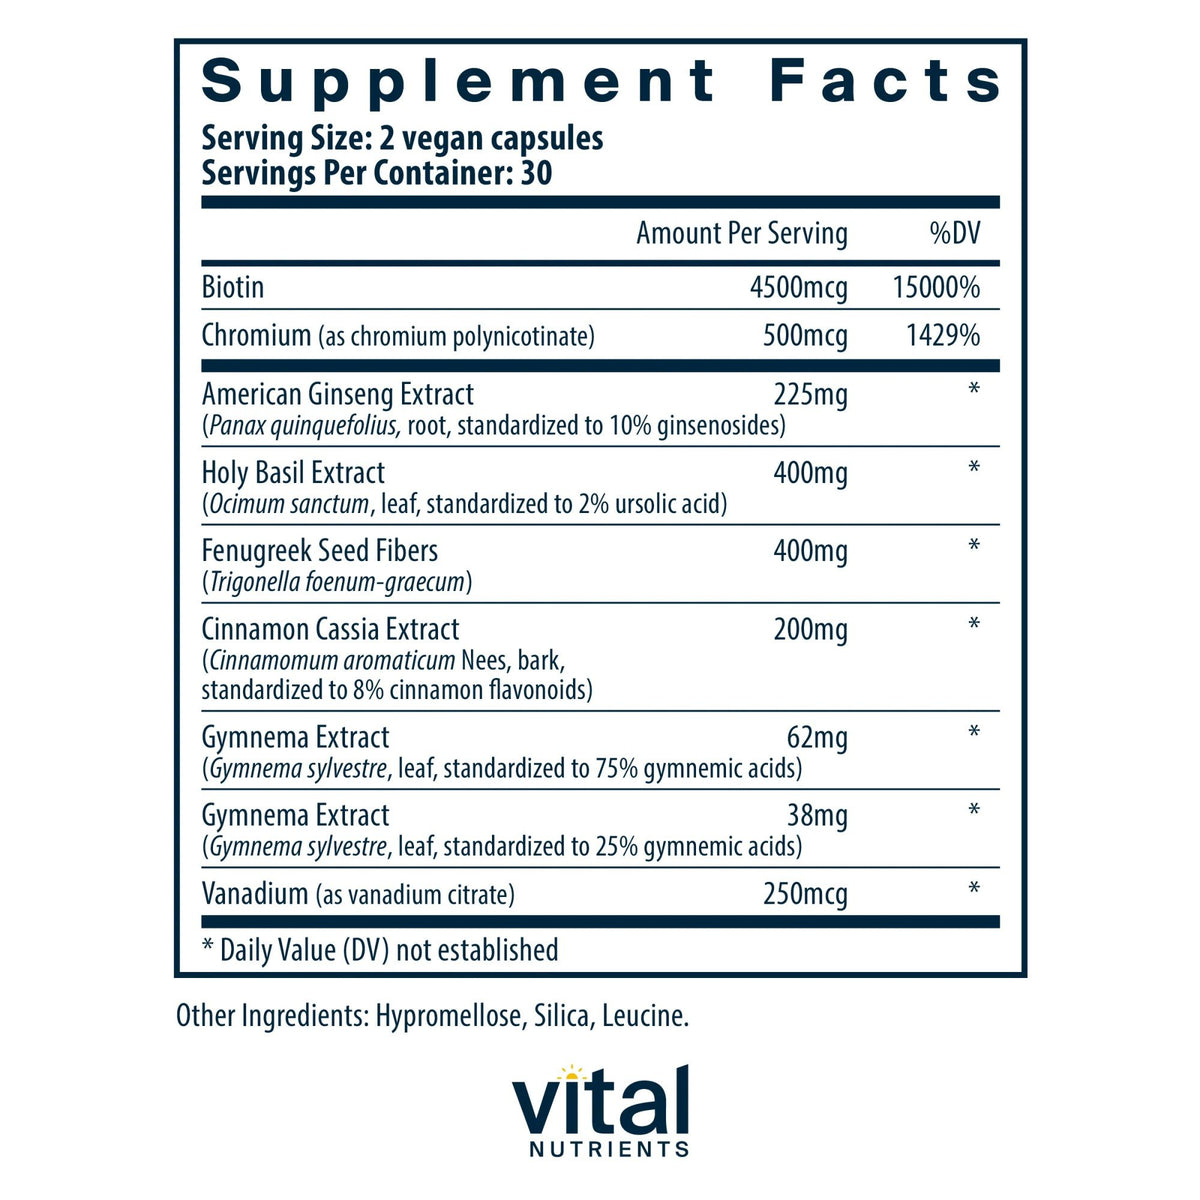 Vital Nutrients Blood Sugar Support 60 Capsule